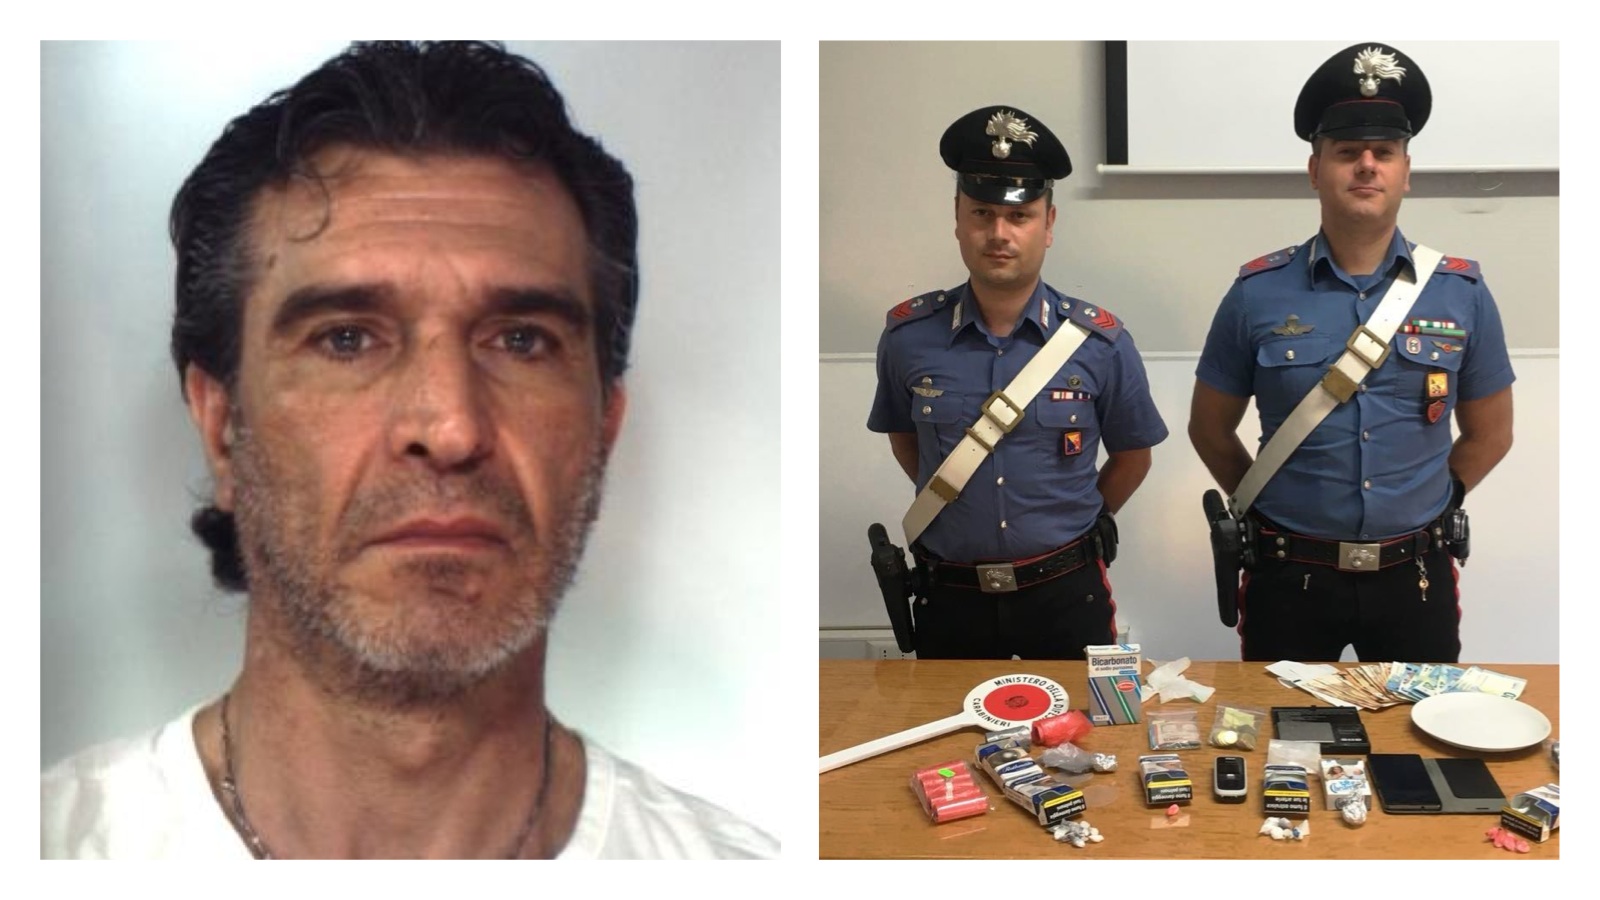 Preparava in casa “coca” |da smerciare: arrestato - Live Sicilia